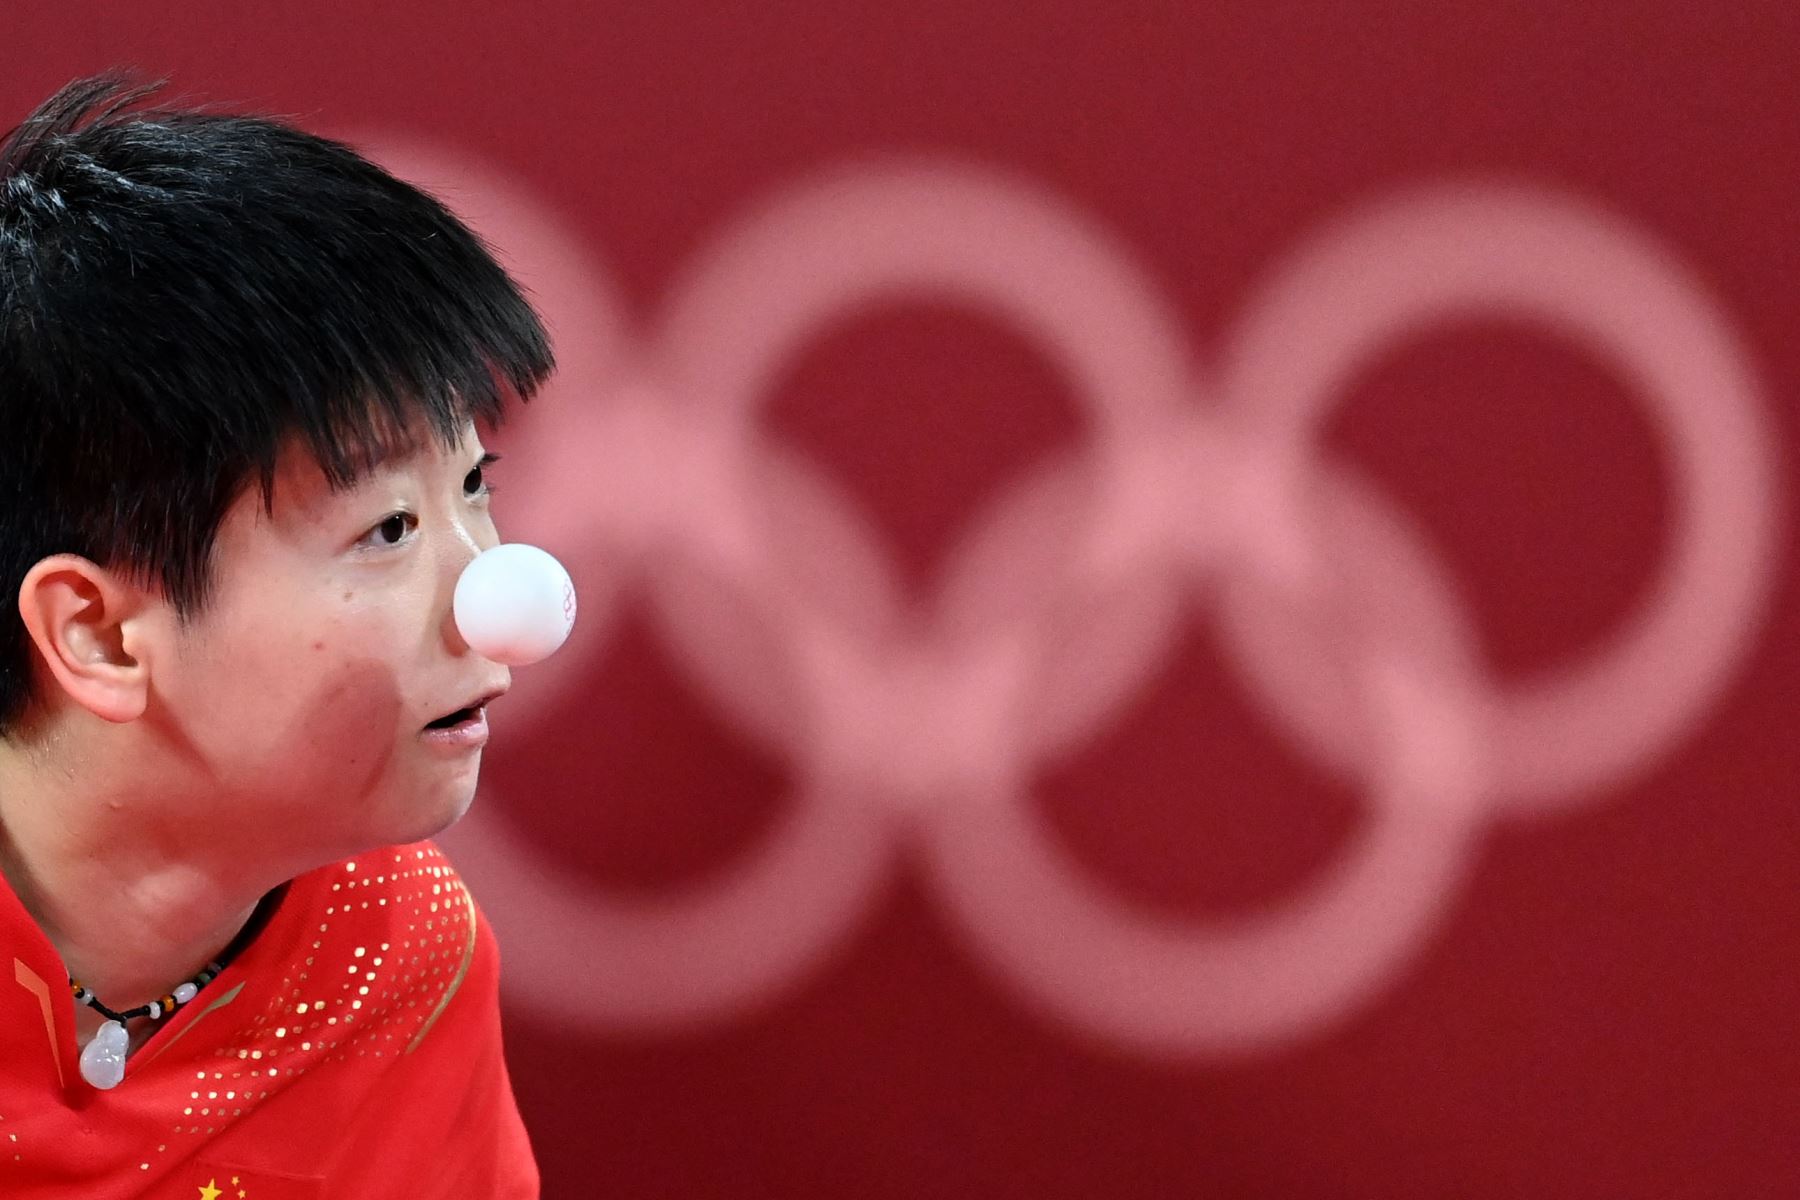 Sun Yingsha de China compite durante la semifinal de tenis de mesa de su equipo femenino en el Gimnasio Metropolitano de Tokio durante los Juegos Olímpicos de Tokio 2020.
Foto: AFP